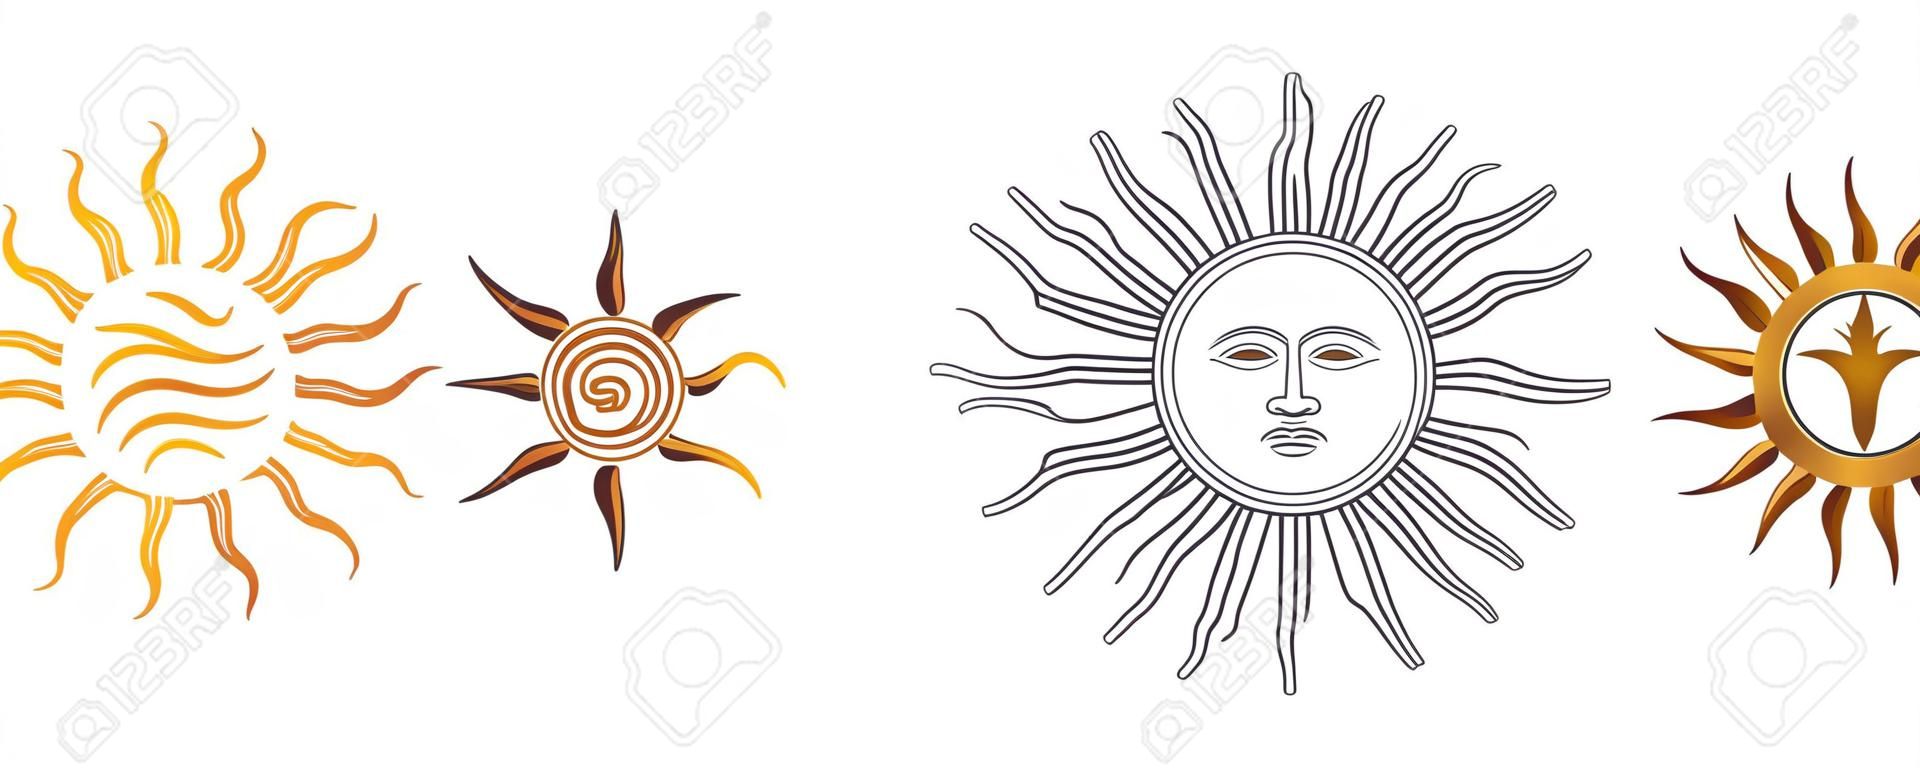 Variations du soleil de mai. Espagnol Sol de Mayo, emblèmes nationaux de l'Uruguay et de l'Argentine. Soleil radieux, argenté ou jaune doré à visage humain et rayons droits et ondulés. Illustration sur blanc. Vecteur.